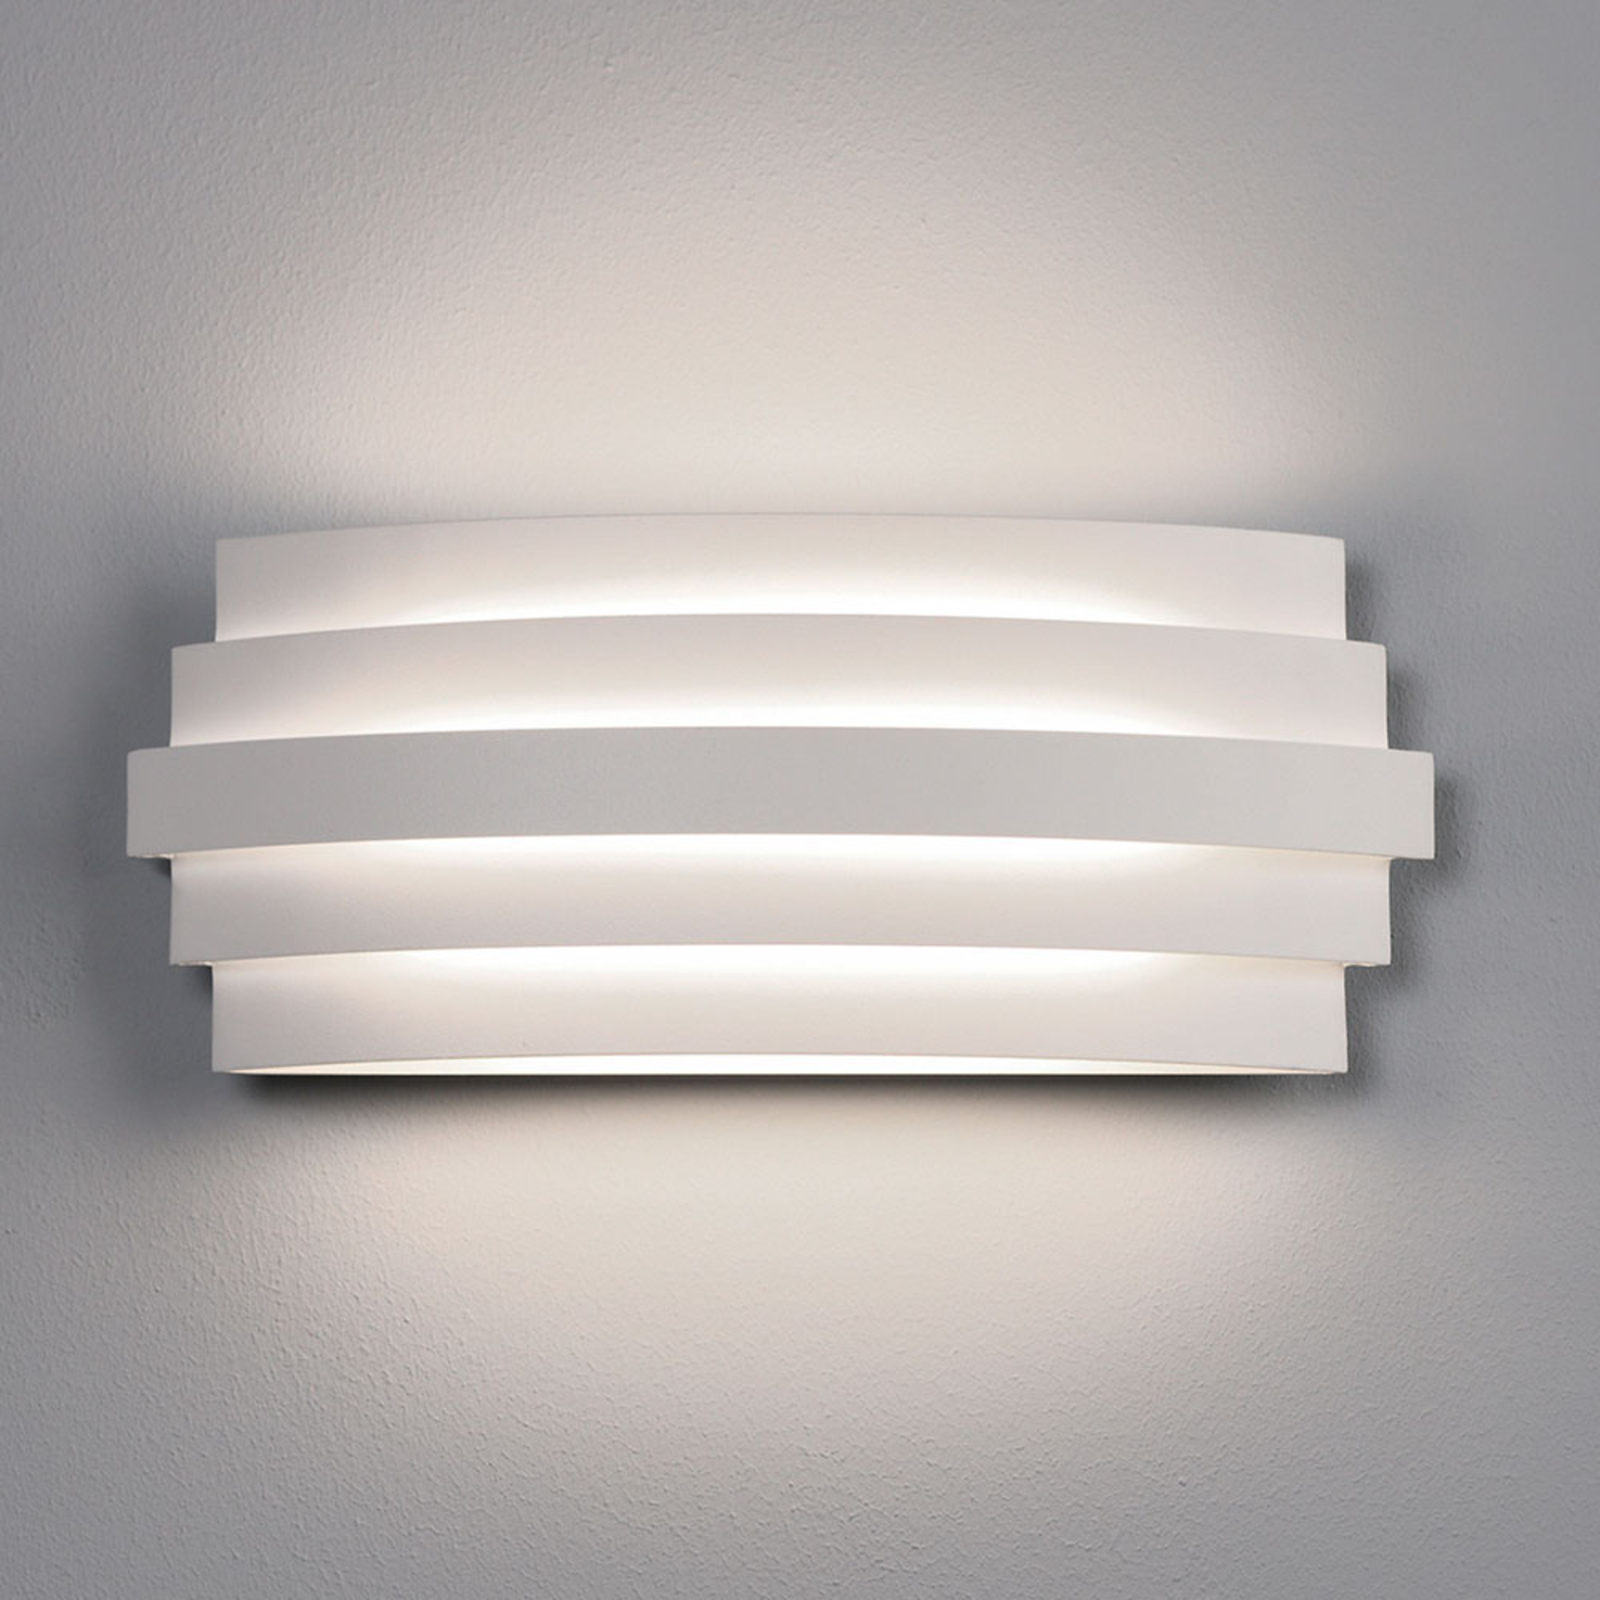 Luxur LED wall light, white